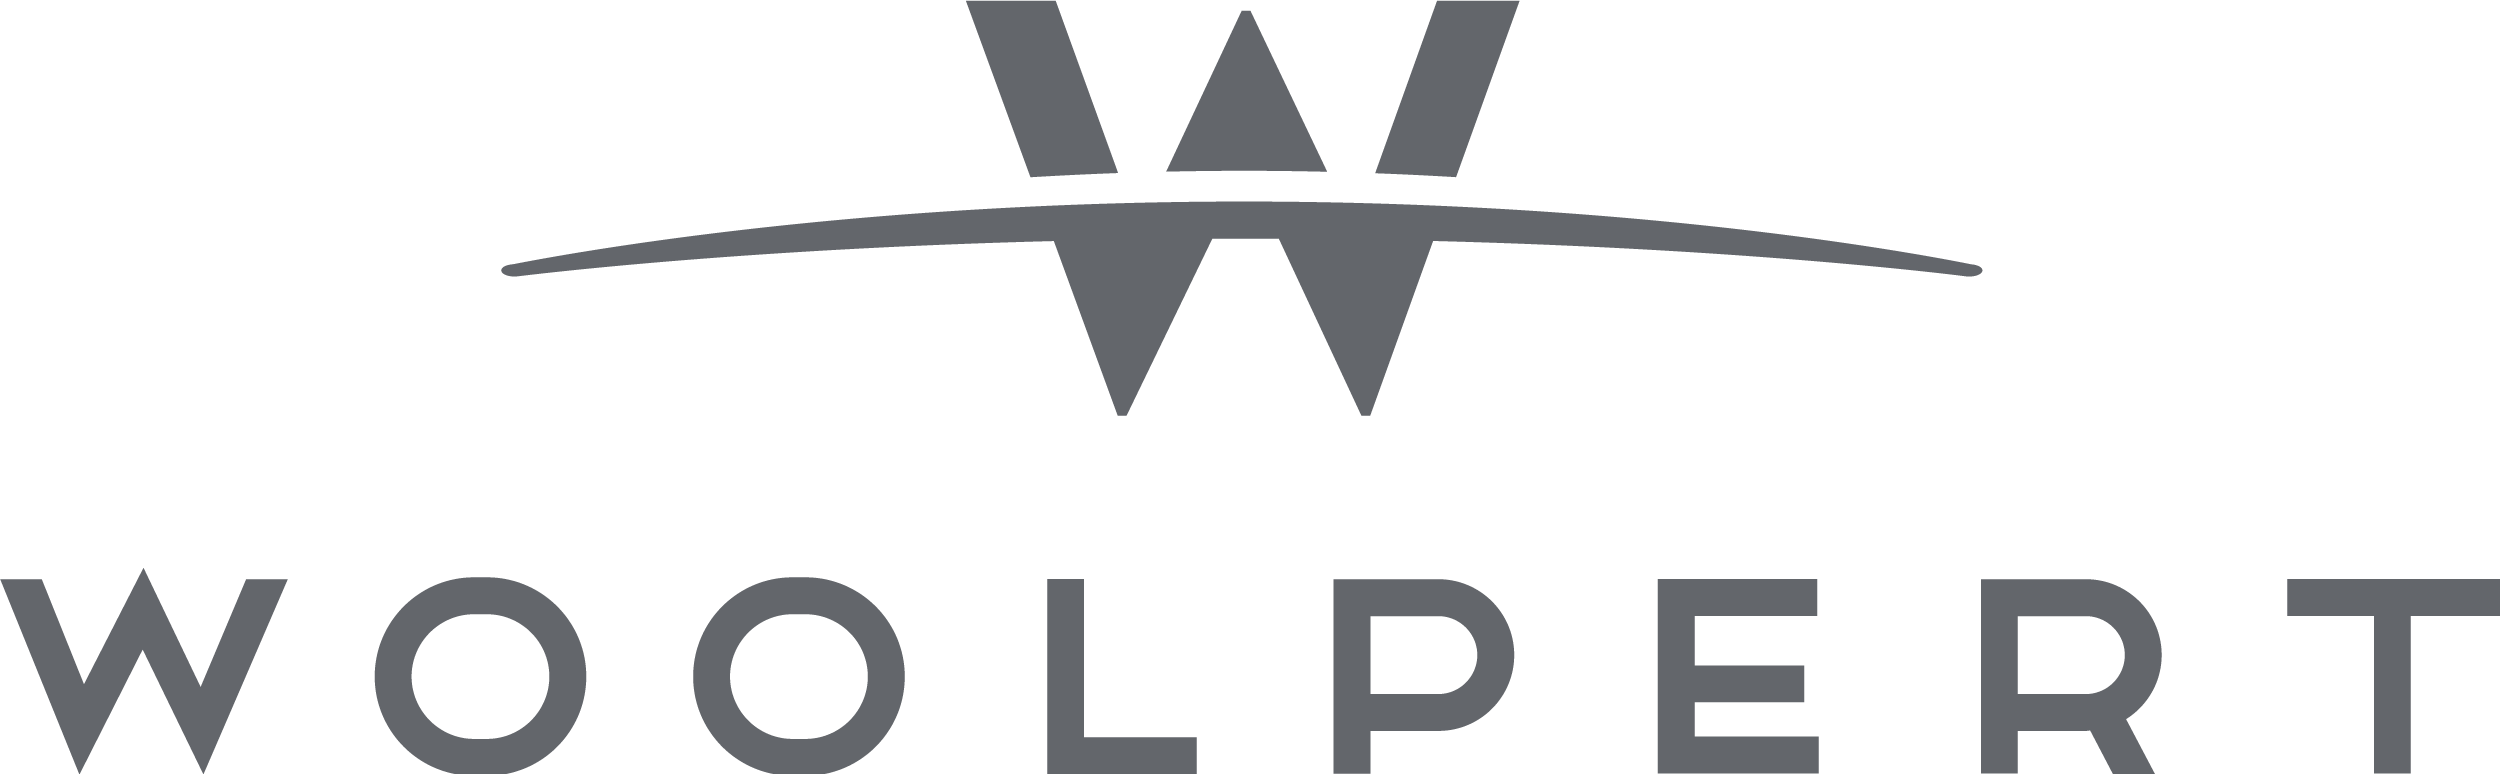 woolpert 徽标